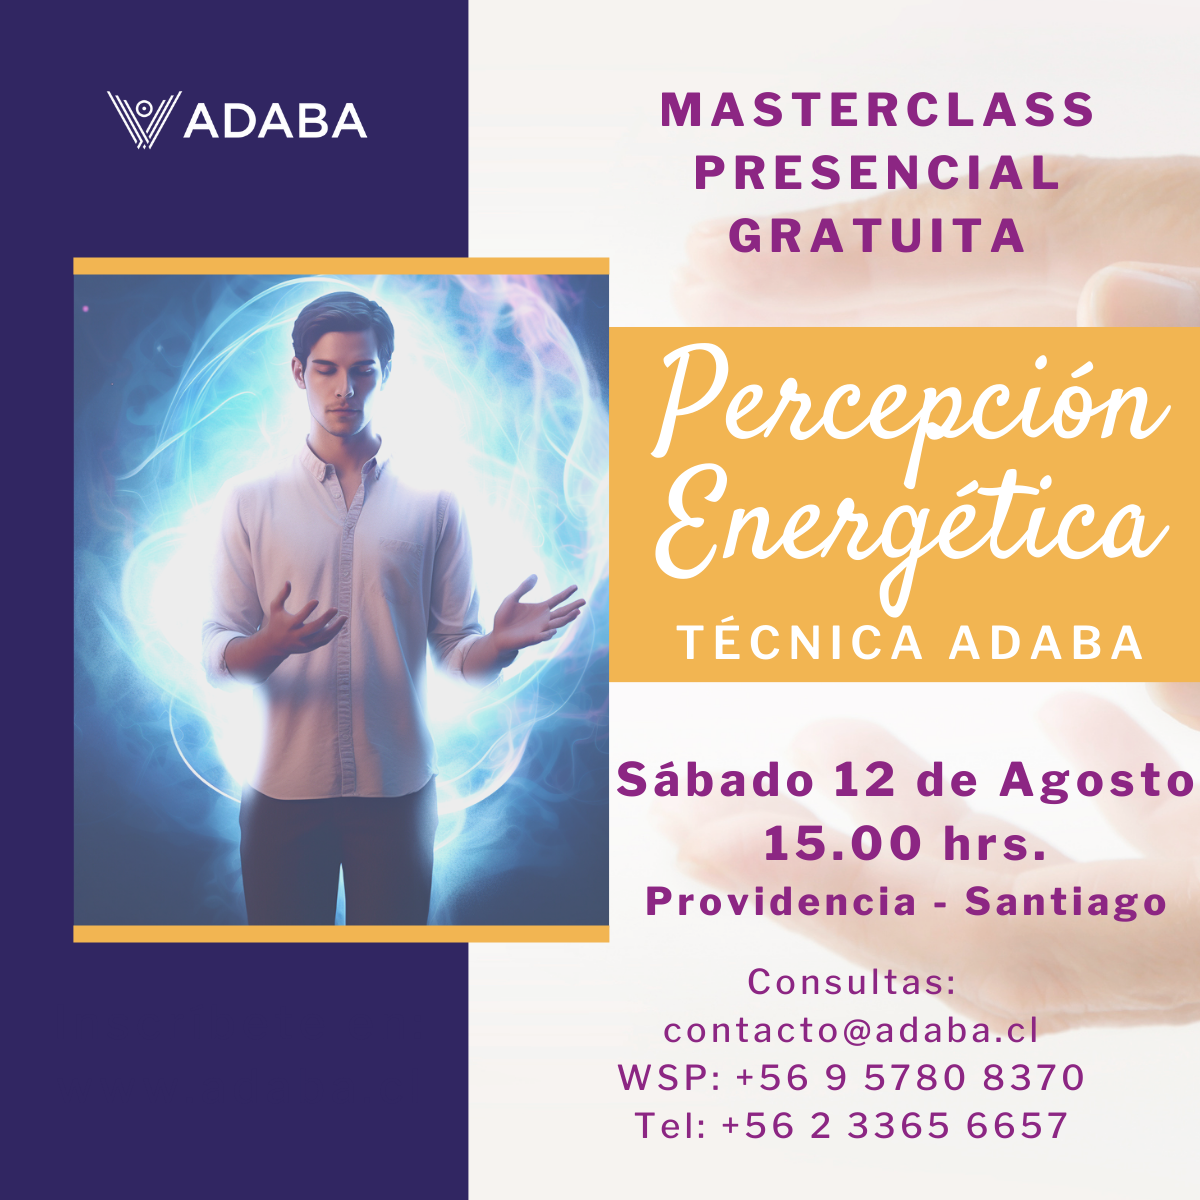 Masterclass Presencial Gratuita - Percepción Energética Técnica ADABA ✨- 12 Agosto